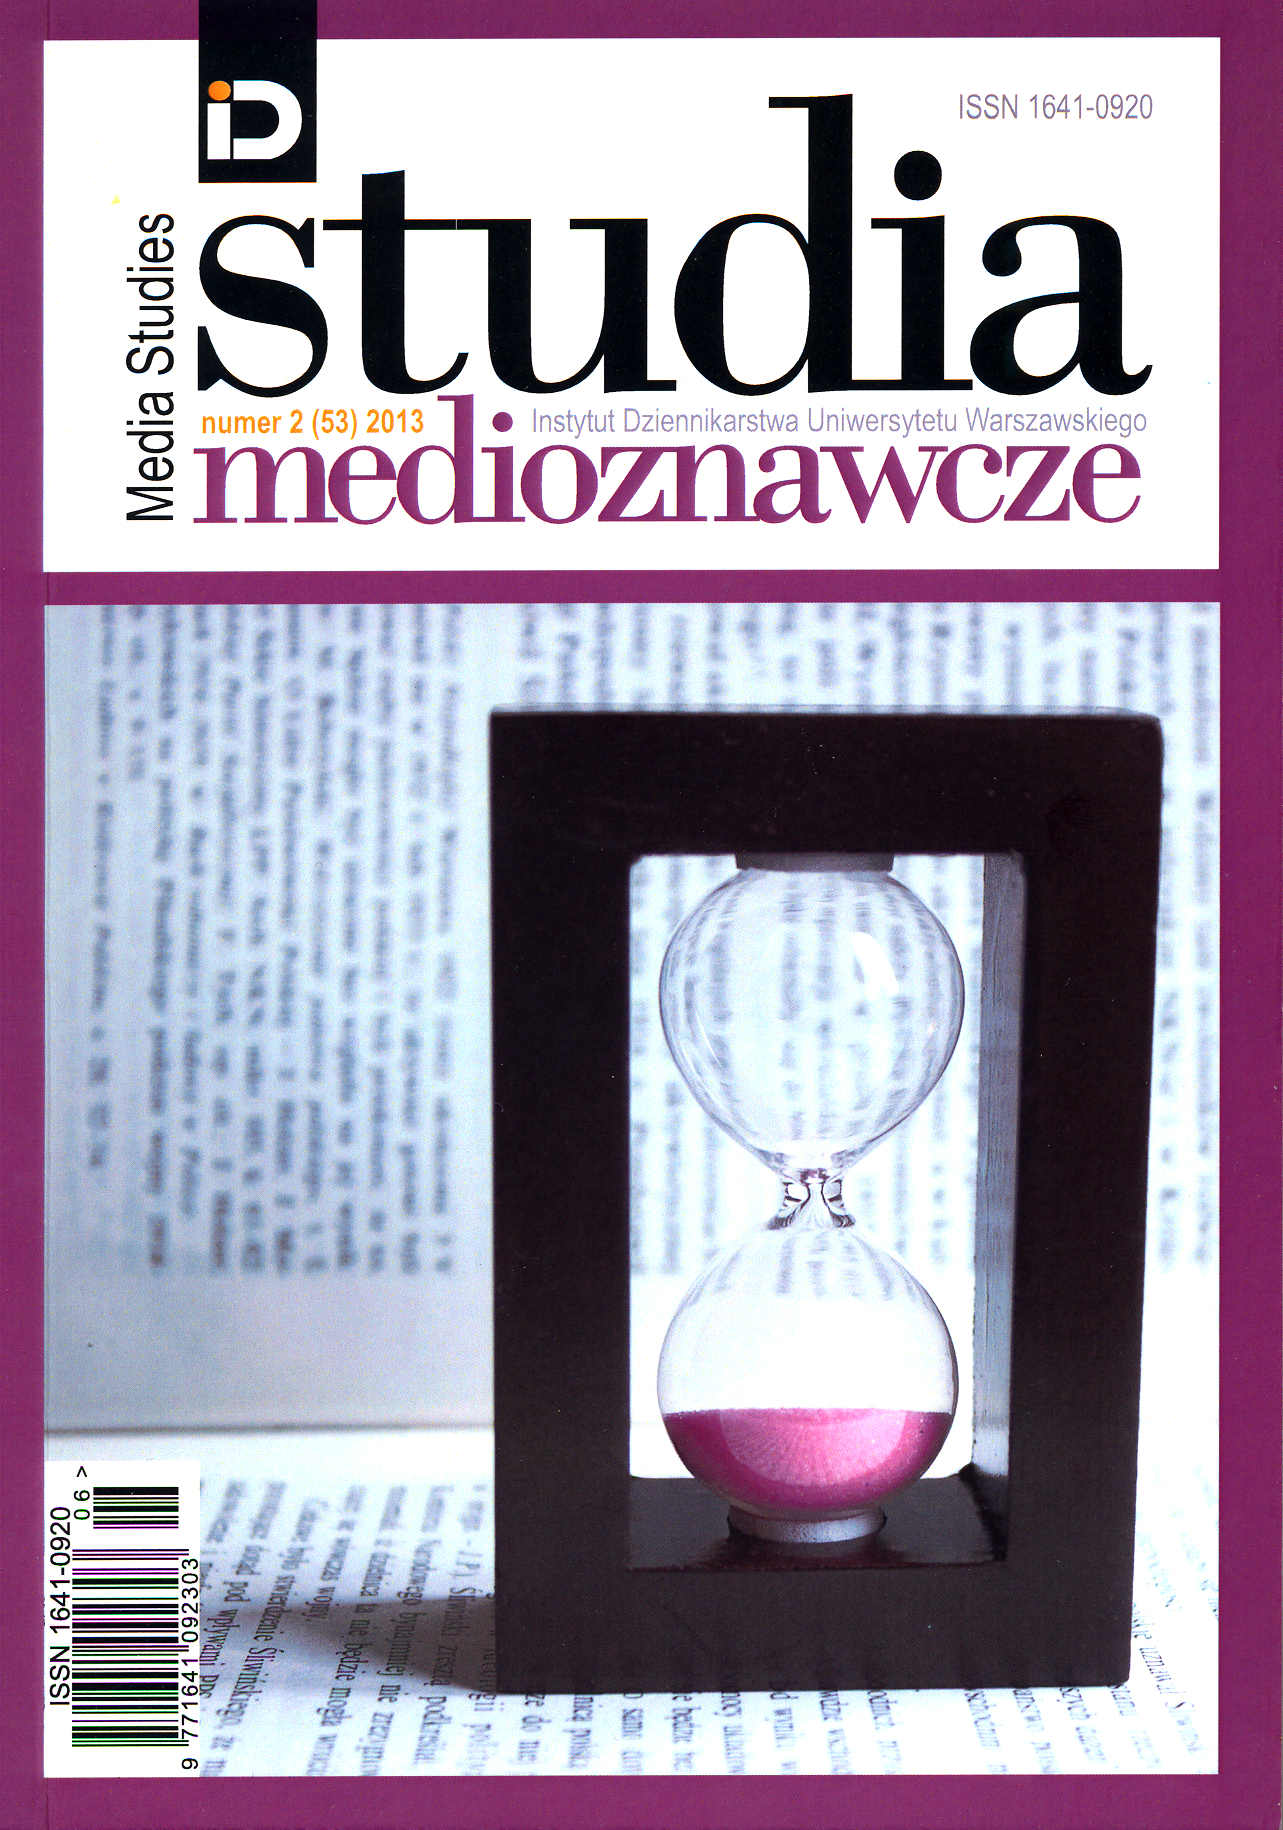 Public relations in local government, ed. by Anna Adamus-Matuszyńska, Agata Austen Cover Image